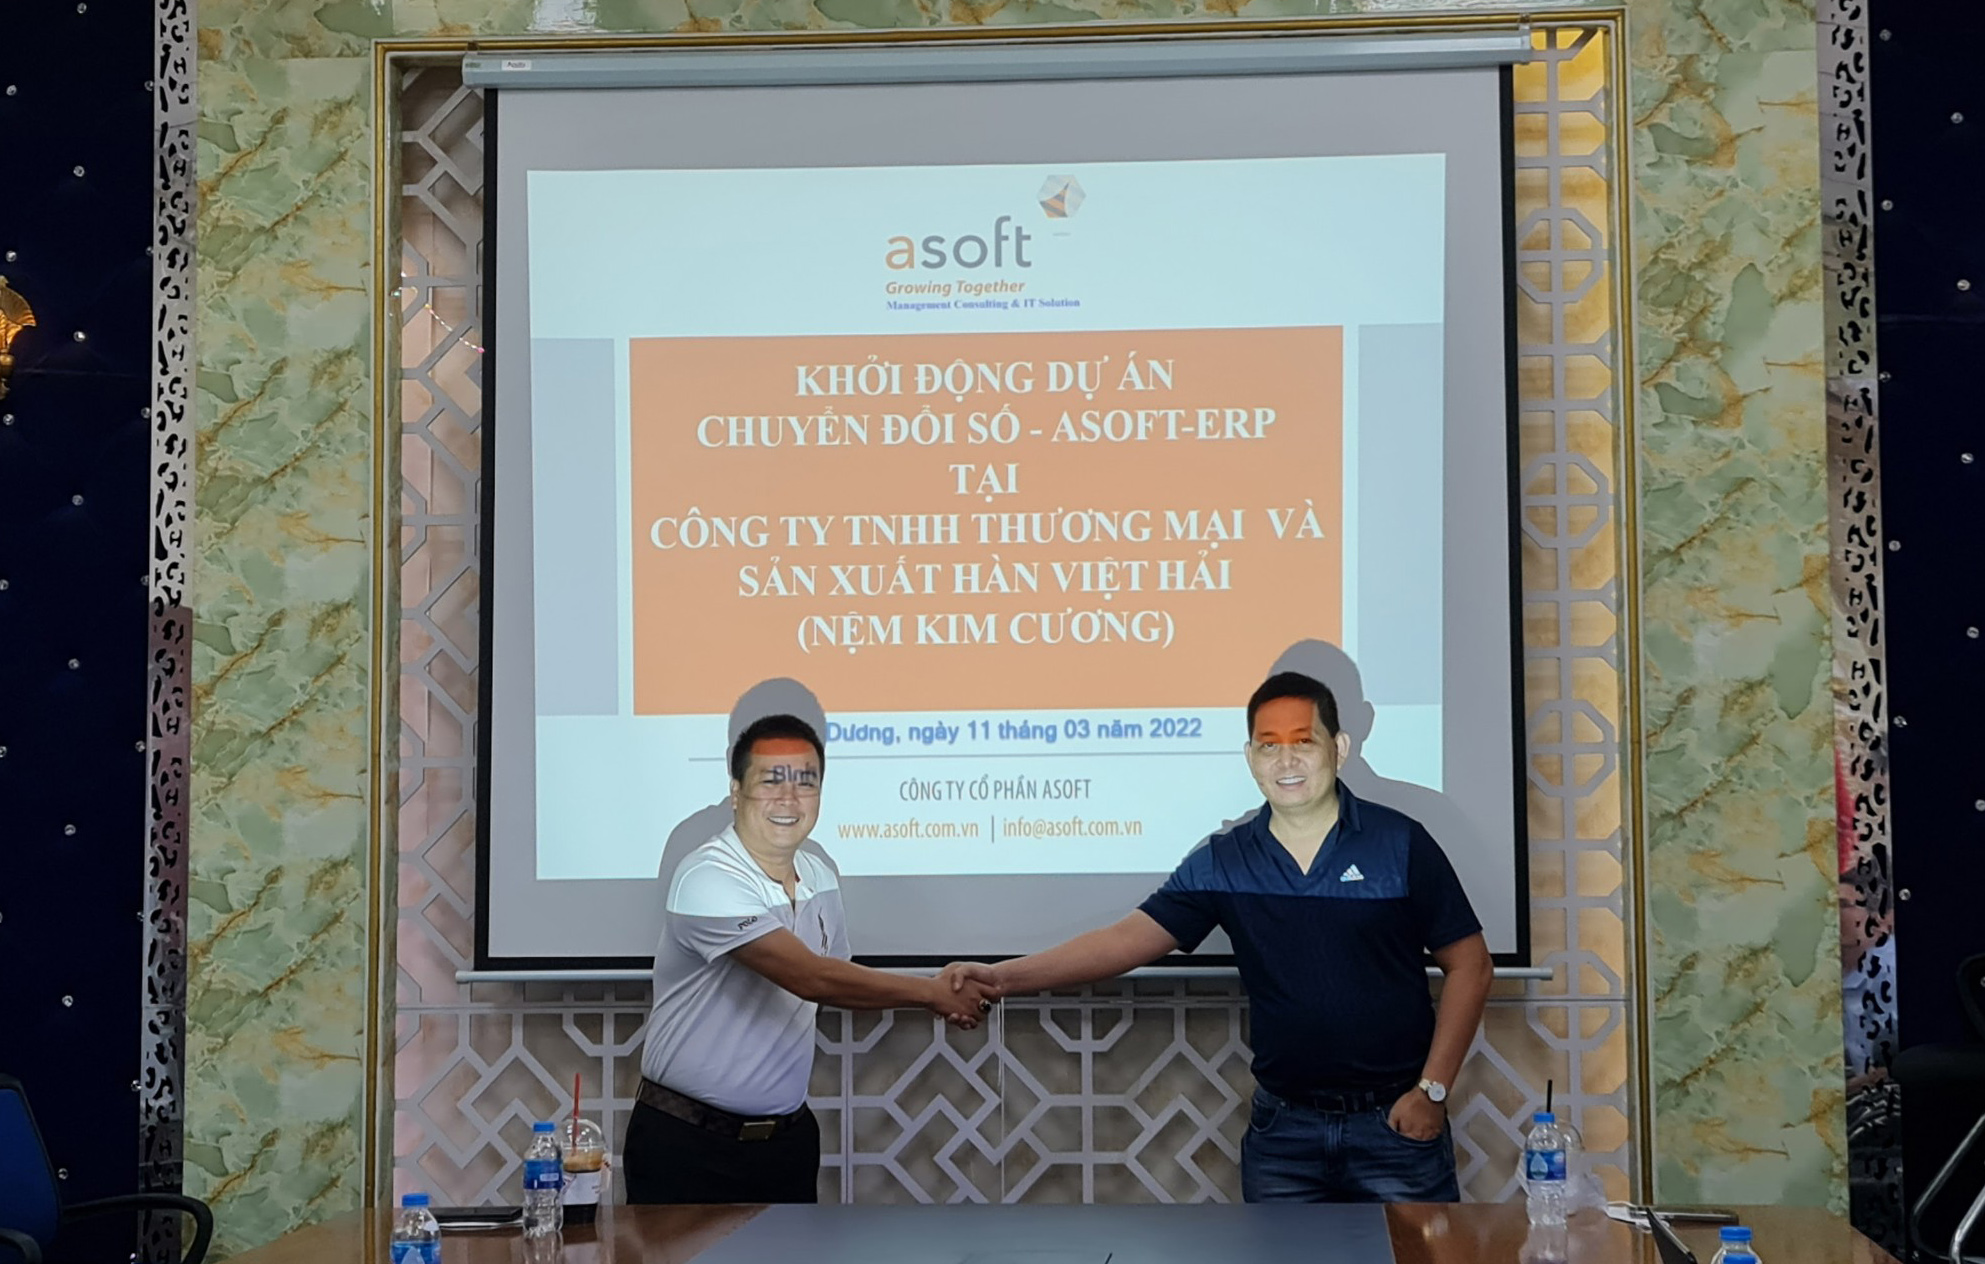 Lễ ký kết thỏa thuận hợp tác chuyển đổi số giữa ASOFT và Công ty TNHH Thương mại và Sản xuất Hàn Việt Hải (Nệm Kim Cương)